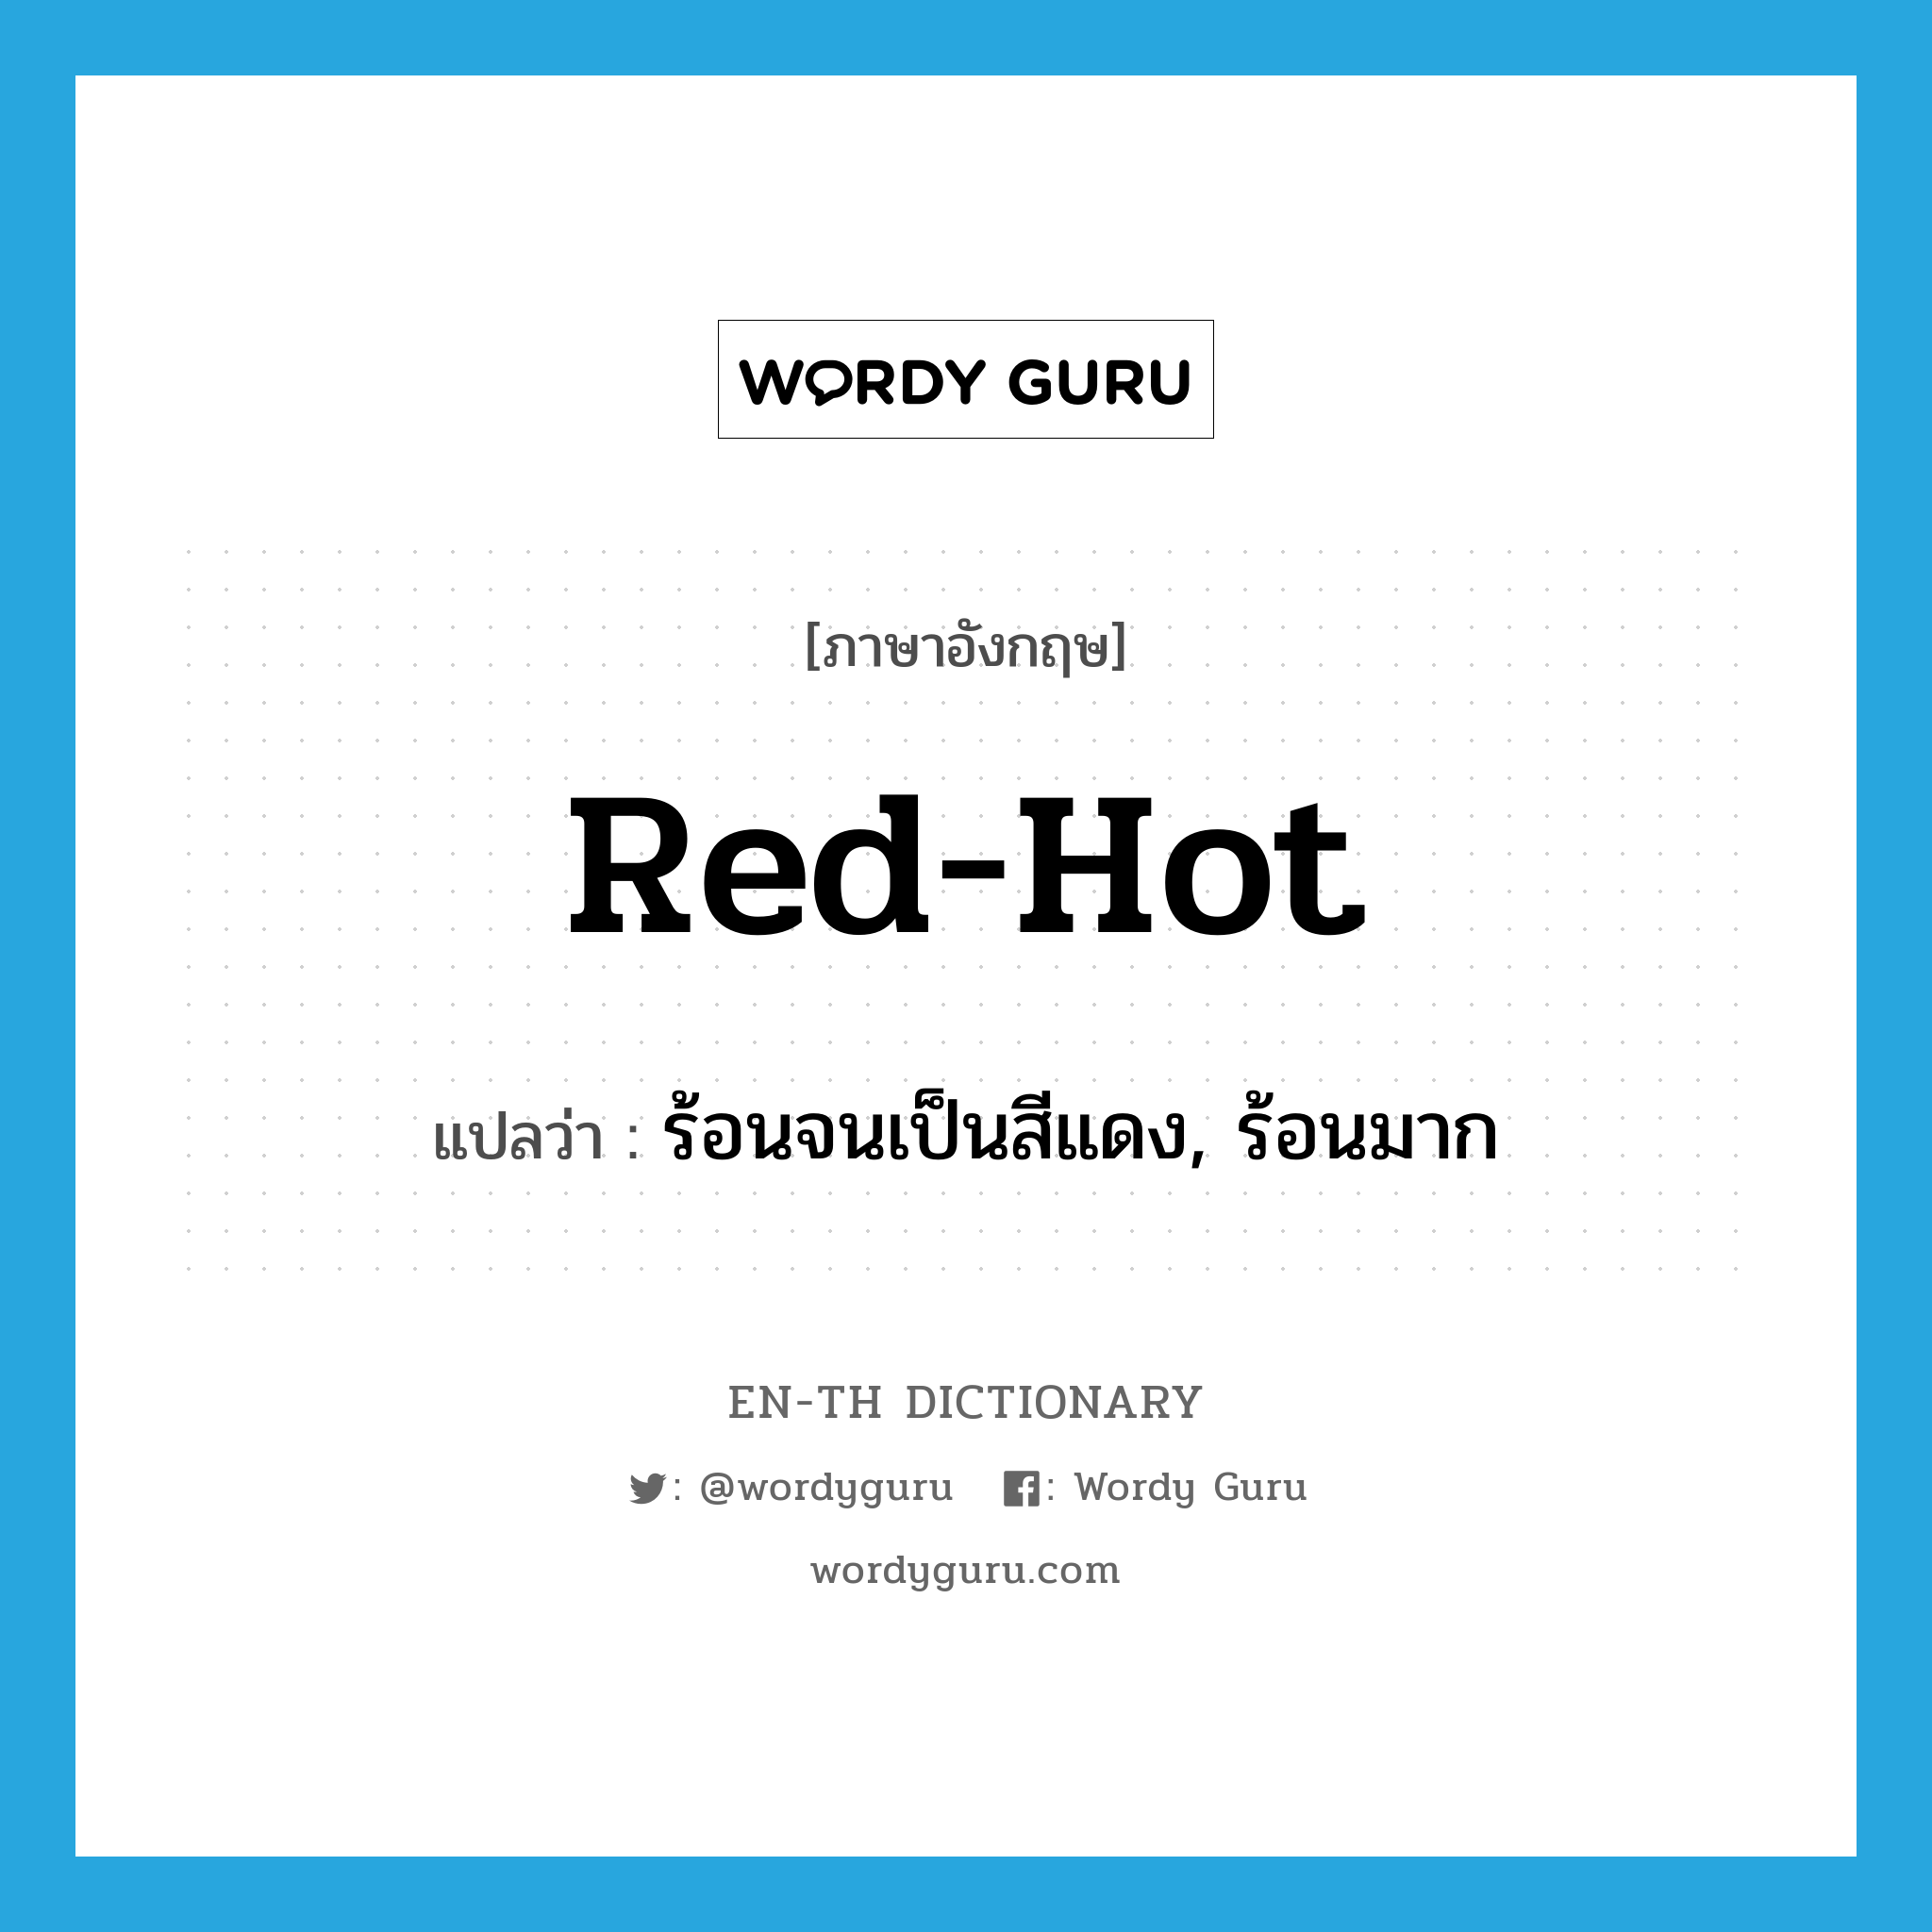 ร้อนจนเป็นสีแดง, ร้อนมาก ภาษาอังกฤษ?, คำศัพท์ภาษาอังกฤษ ร้อนจนเป็นสีแดง, ร้อนมาก แปลว่า red-hot ประเภท ADJ หมวด ADJ